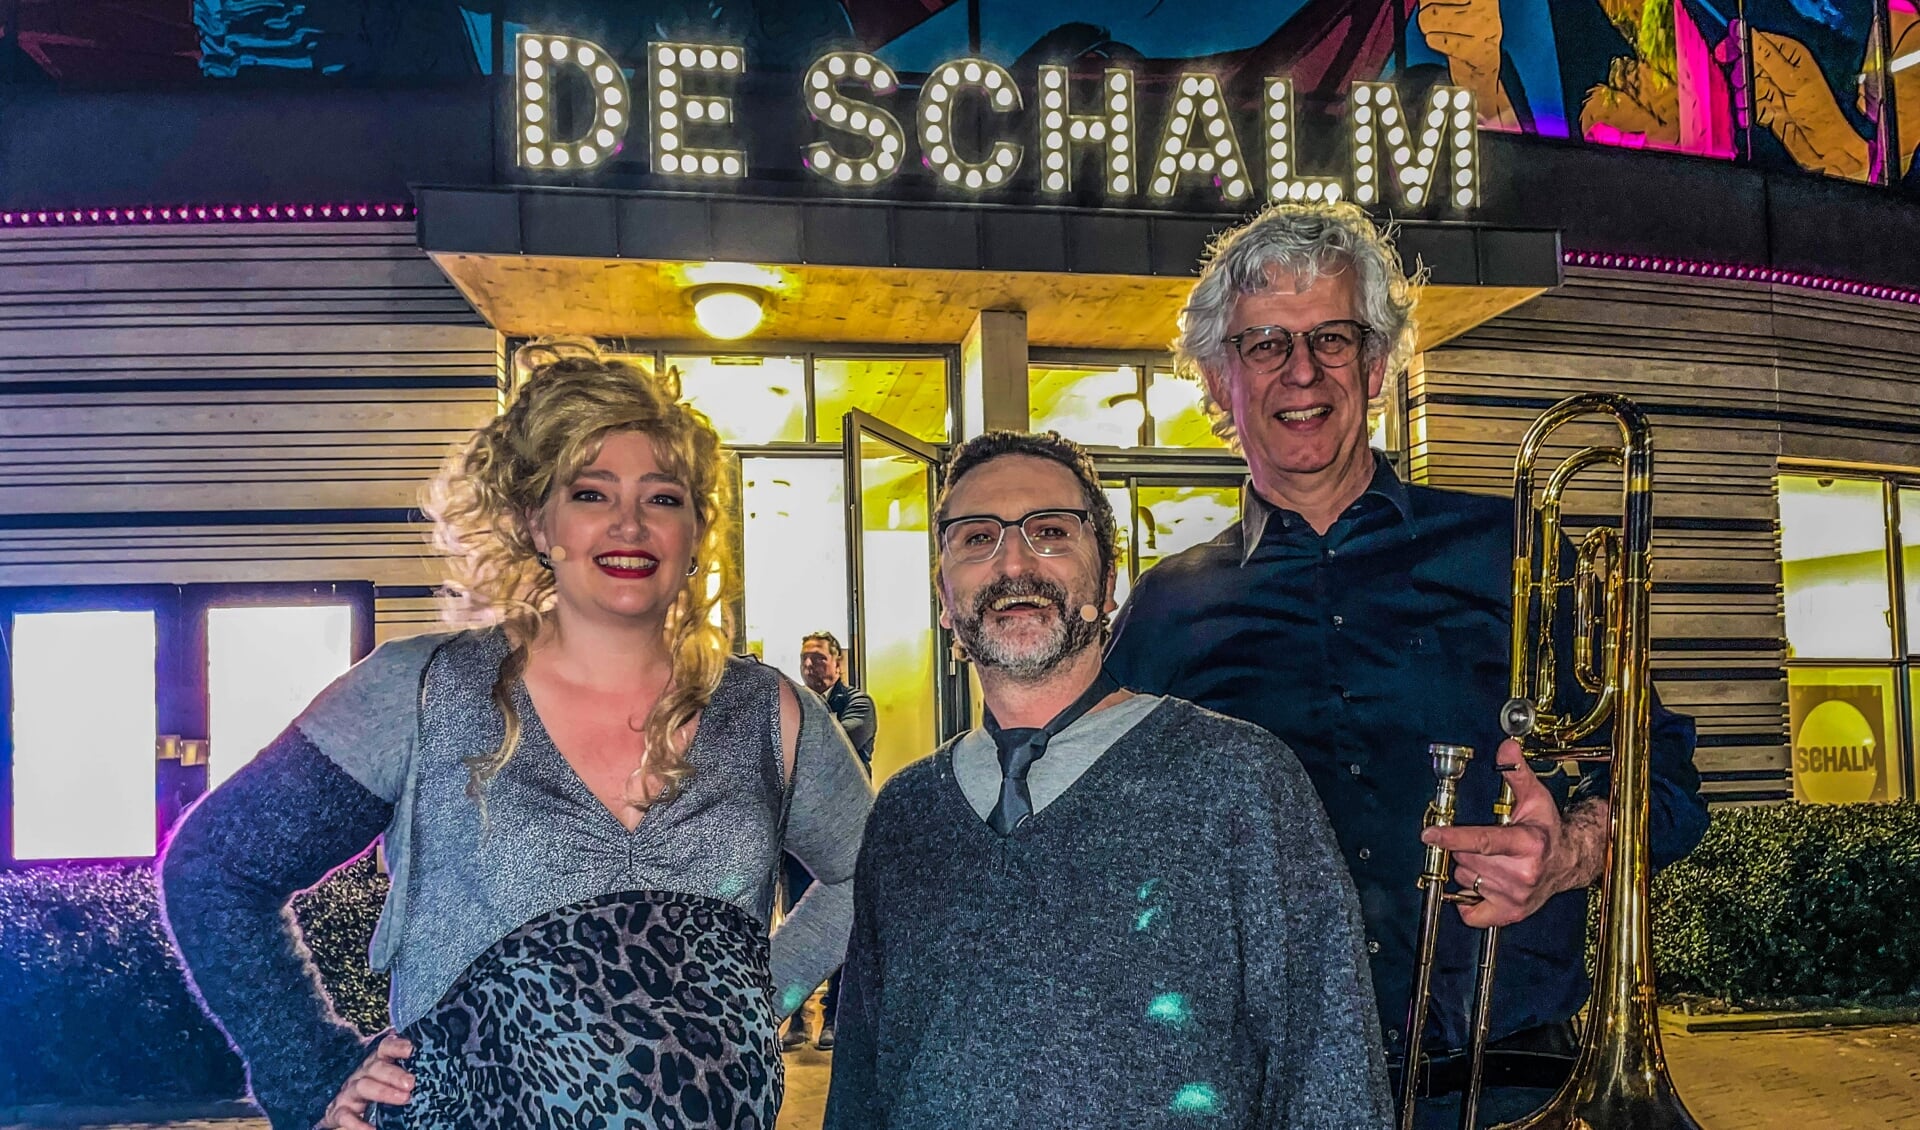 Eefje, Marcel en Guido voor theater De Schalm in Veldhoven afgelopen weekend.